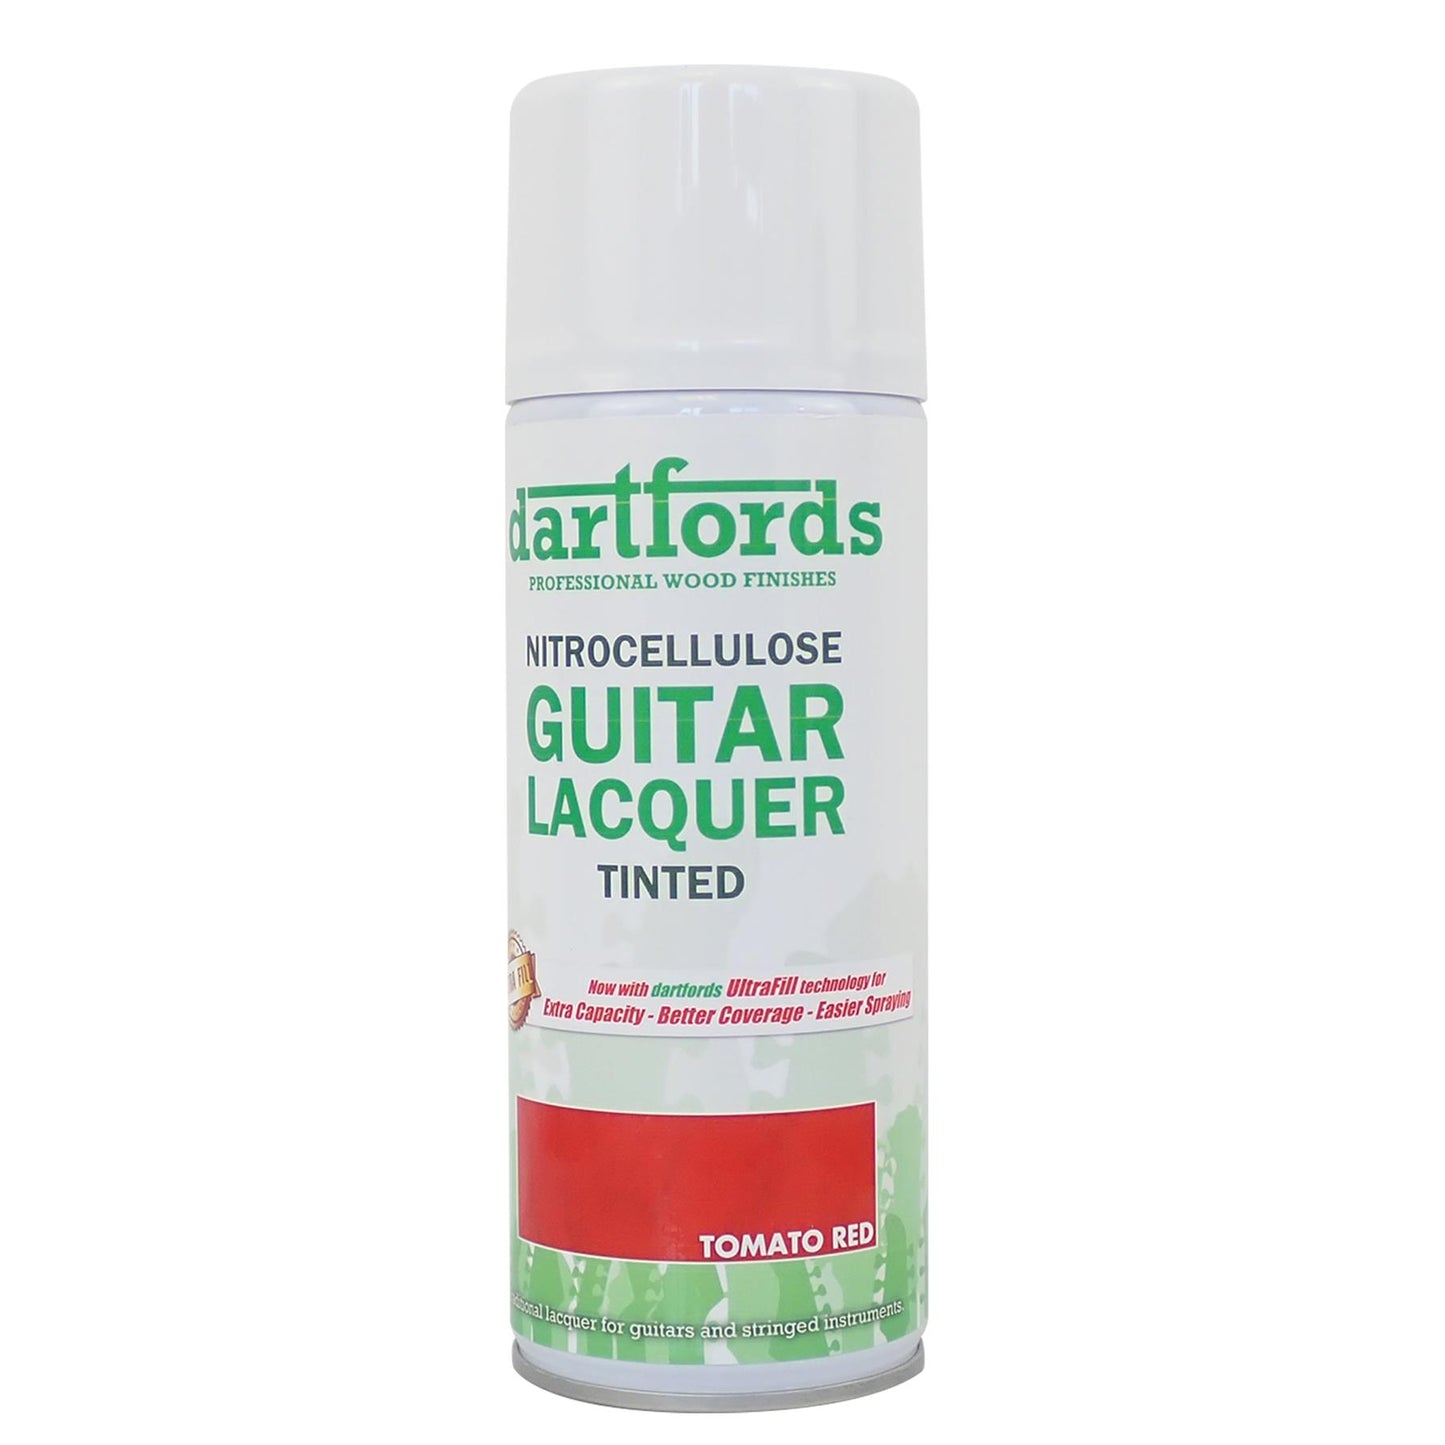 dartfords Tomato Red Nitrocellulose Guitar Lacquer - 400ml Aerosol